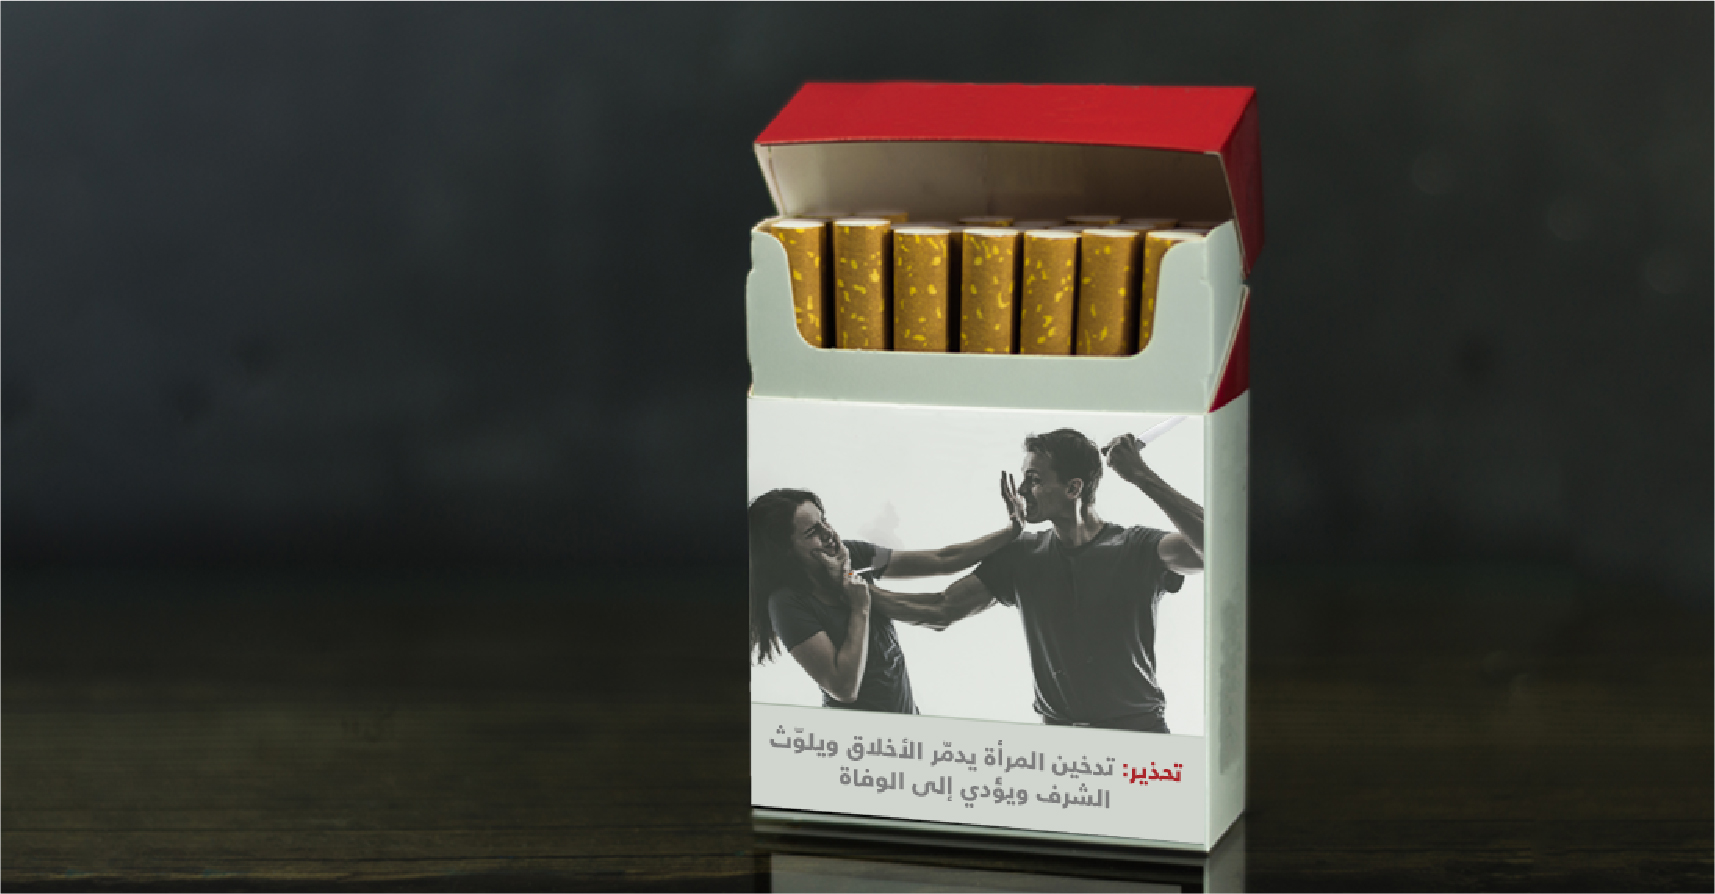 صورة وزارة الصحة تطبع تحذيرات على علب السجائر من خطورة التدخين على صحة الذكور وشرف الإناث